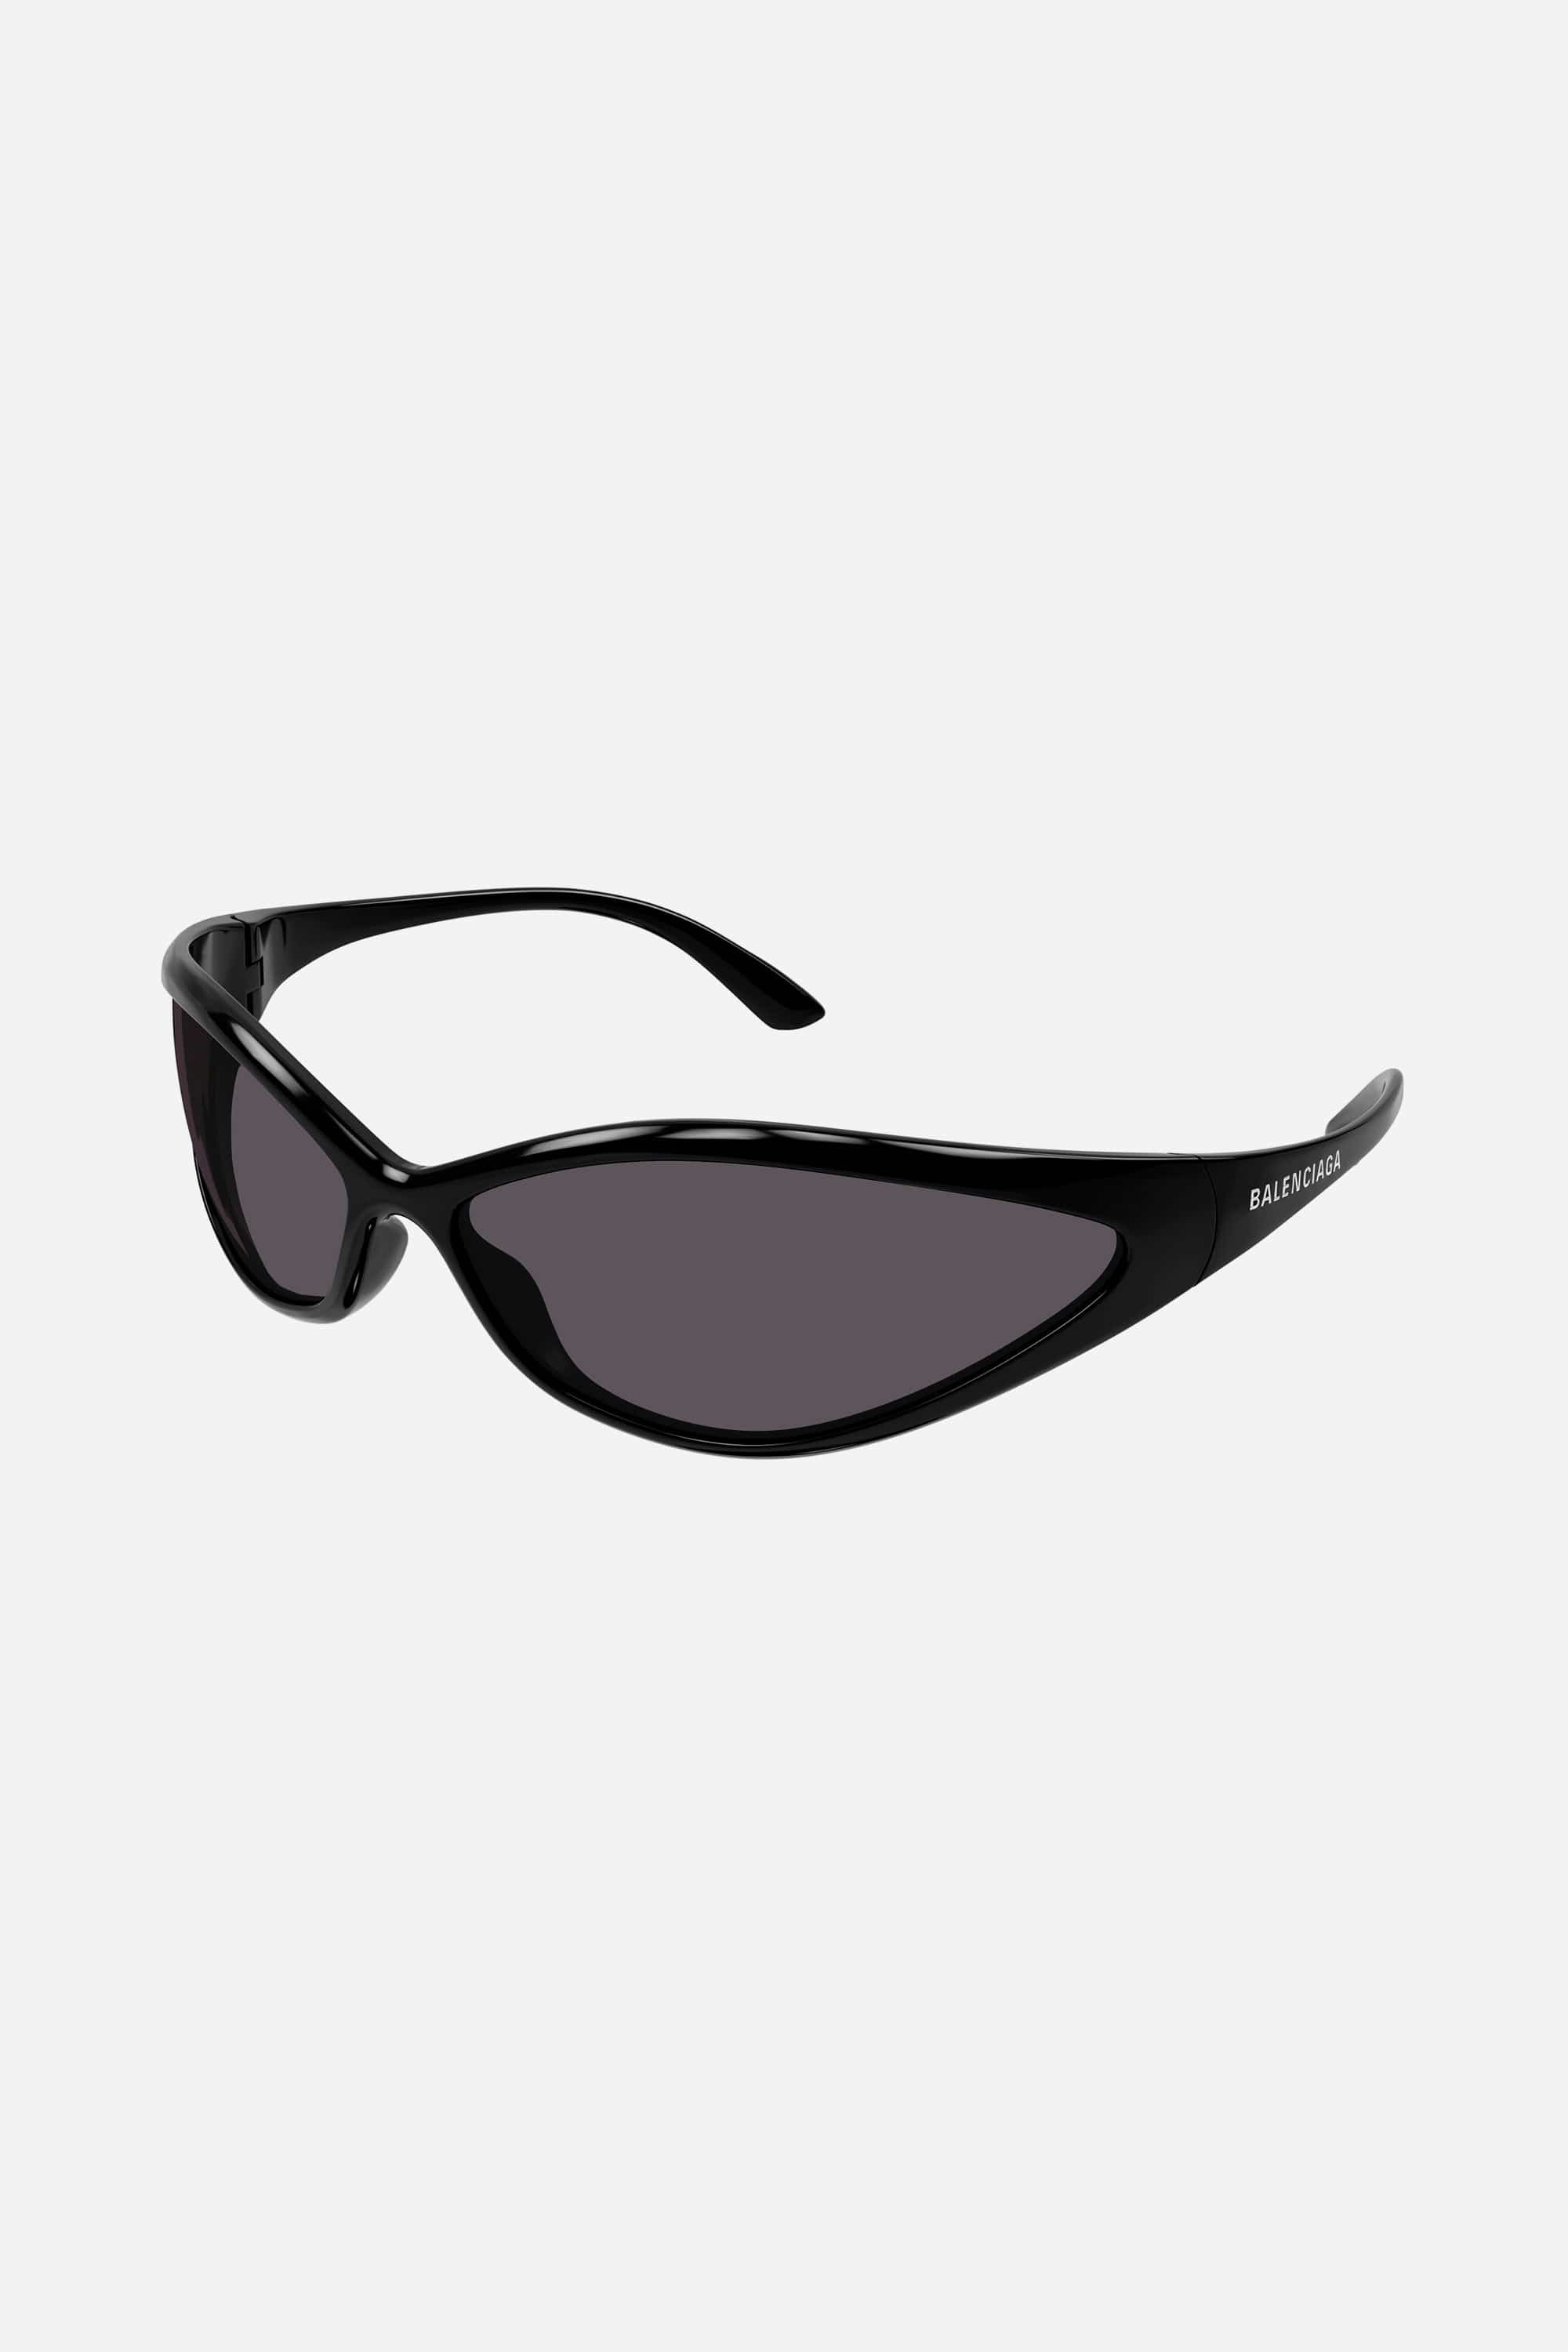 Balenciaga 90S oval sunglasses in black - Eyewear Club